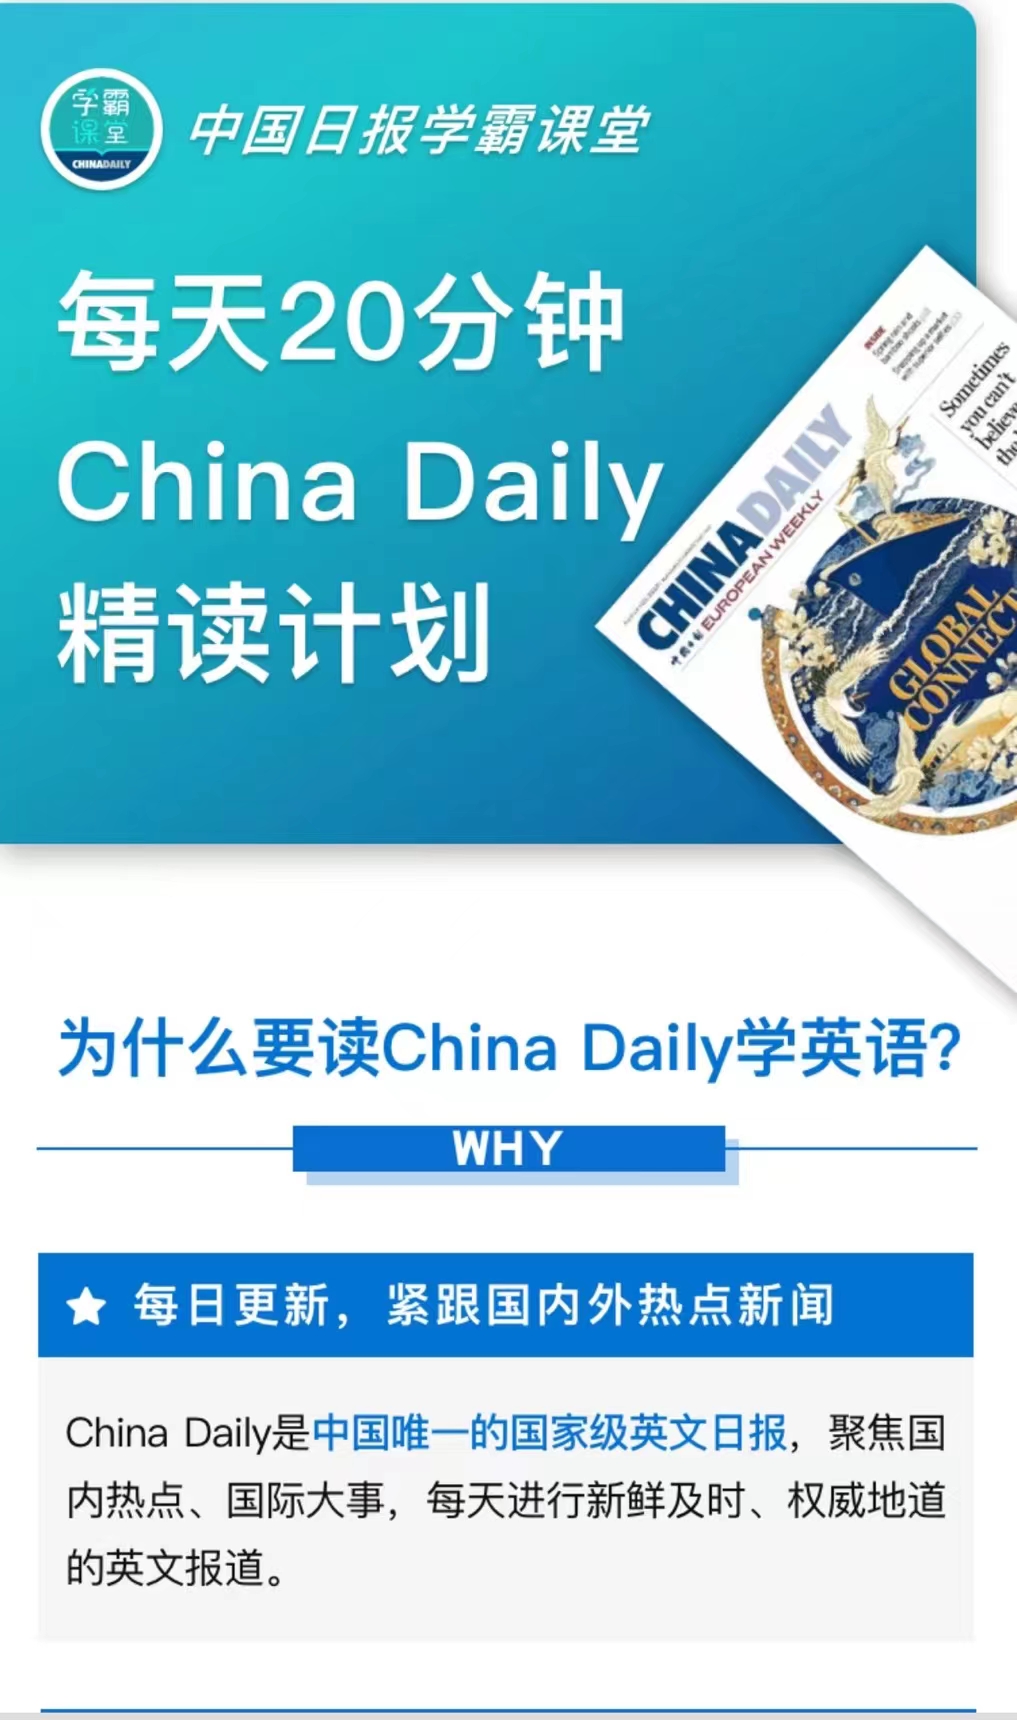 【英语更新】《China Daily 精读计划》 ●更新到0704